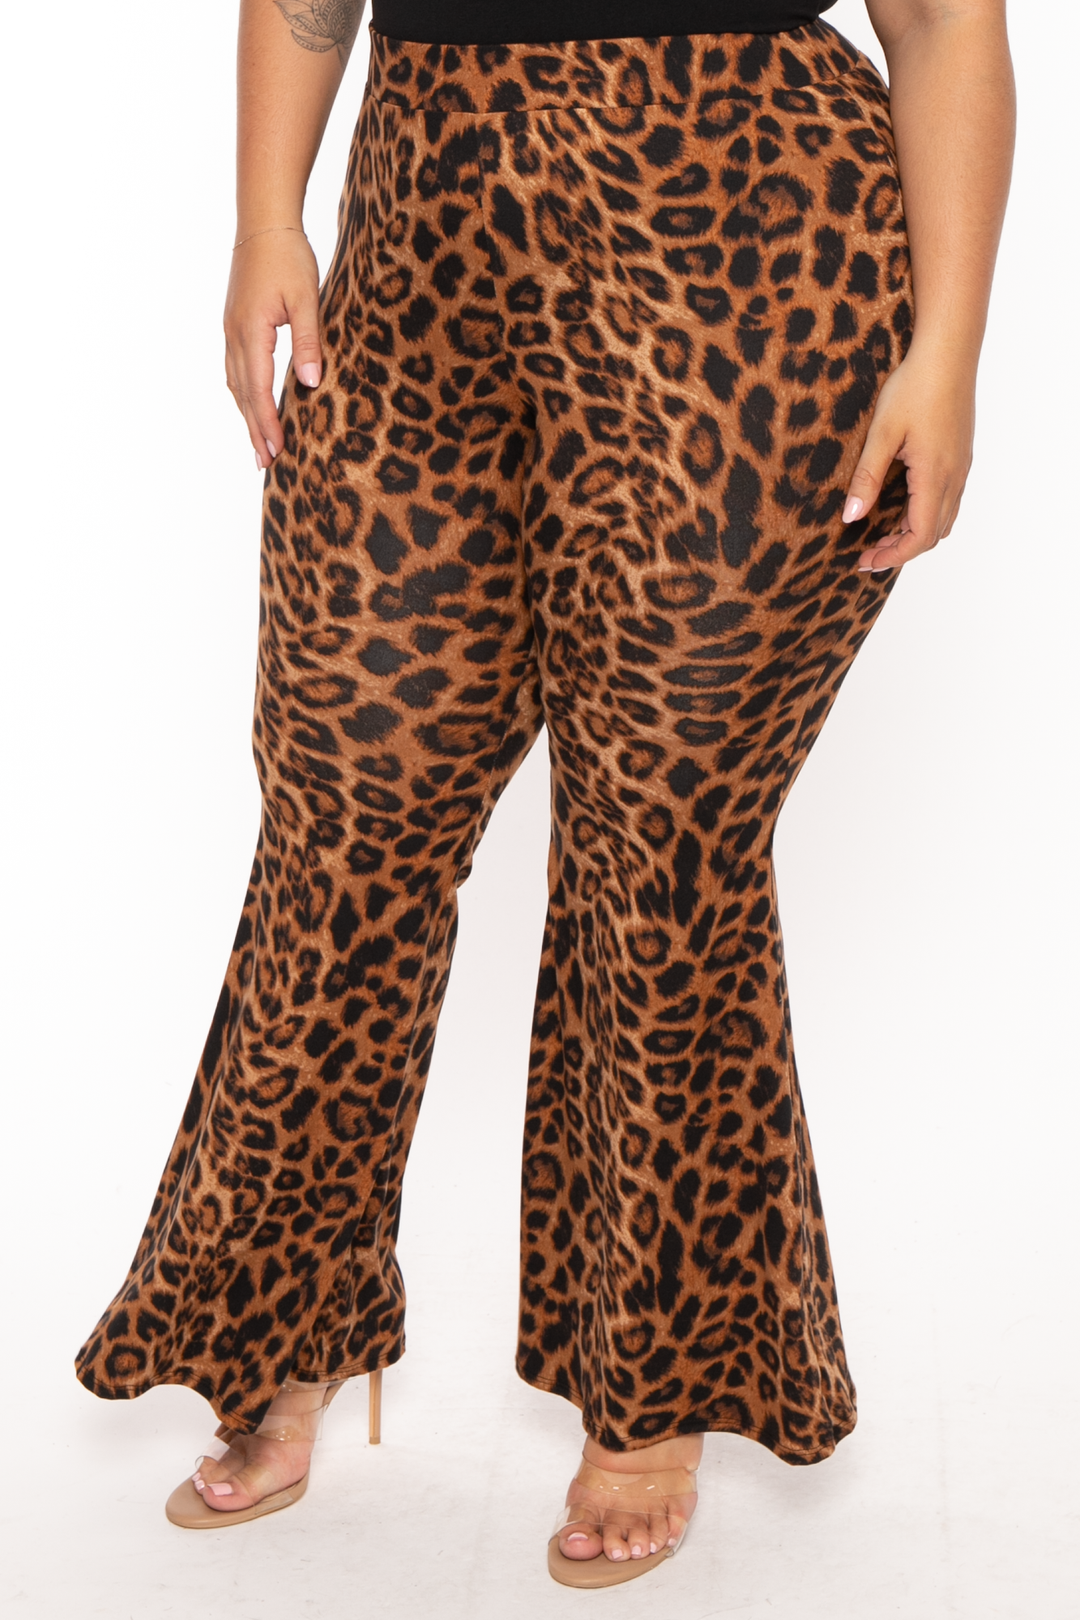 Curvy Sense Pants Plus Size Kiara Leopard  Flare Pant - Brown